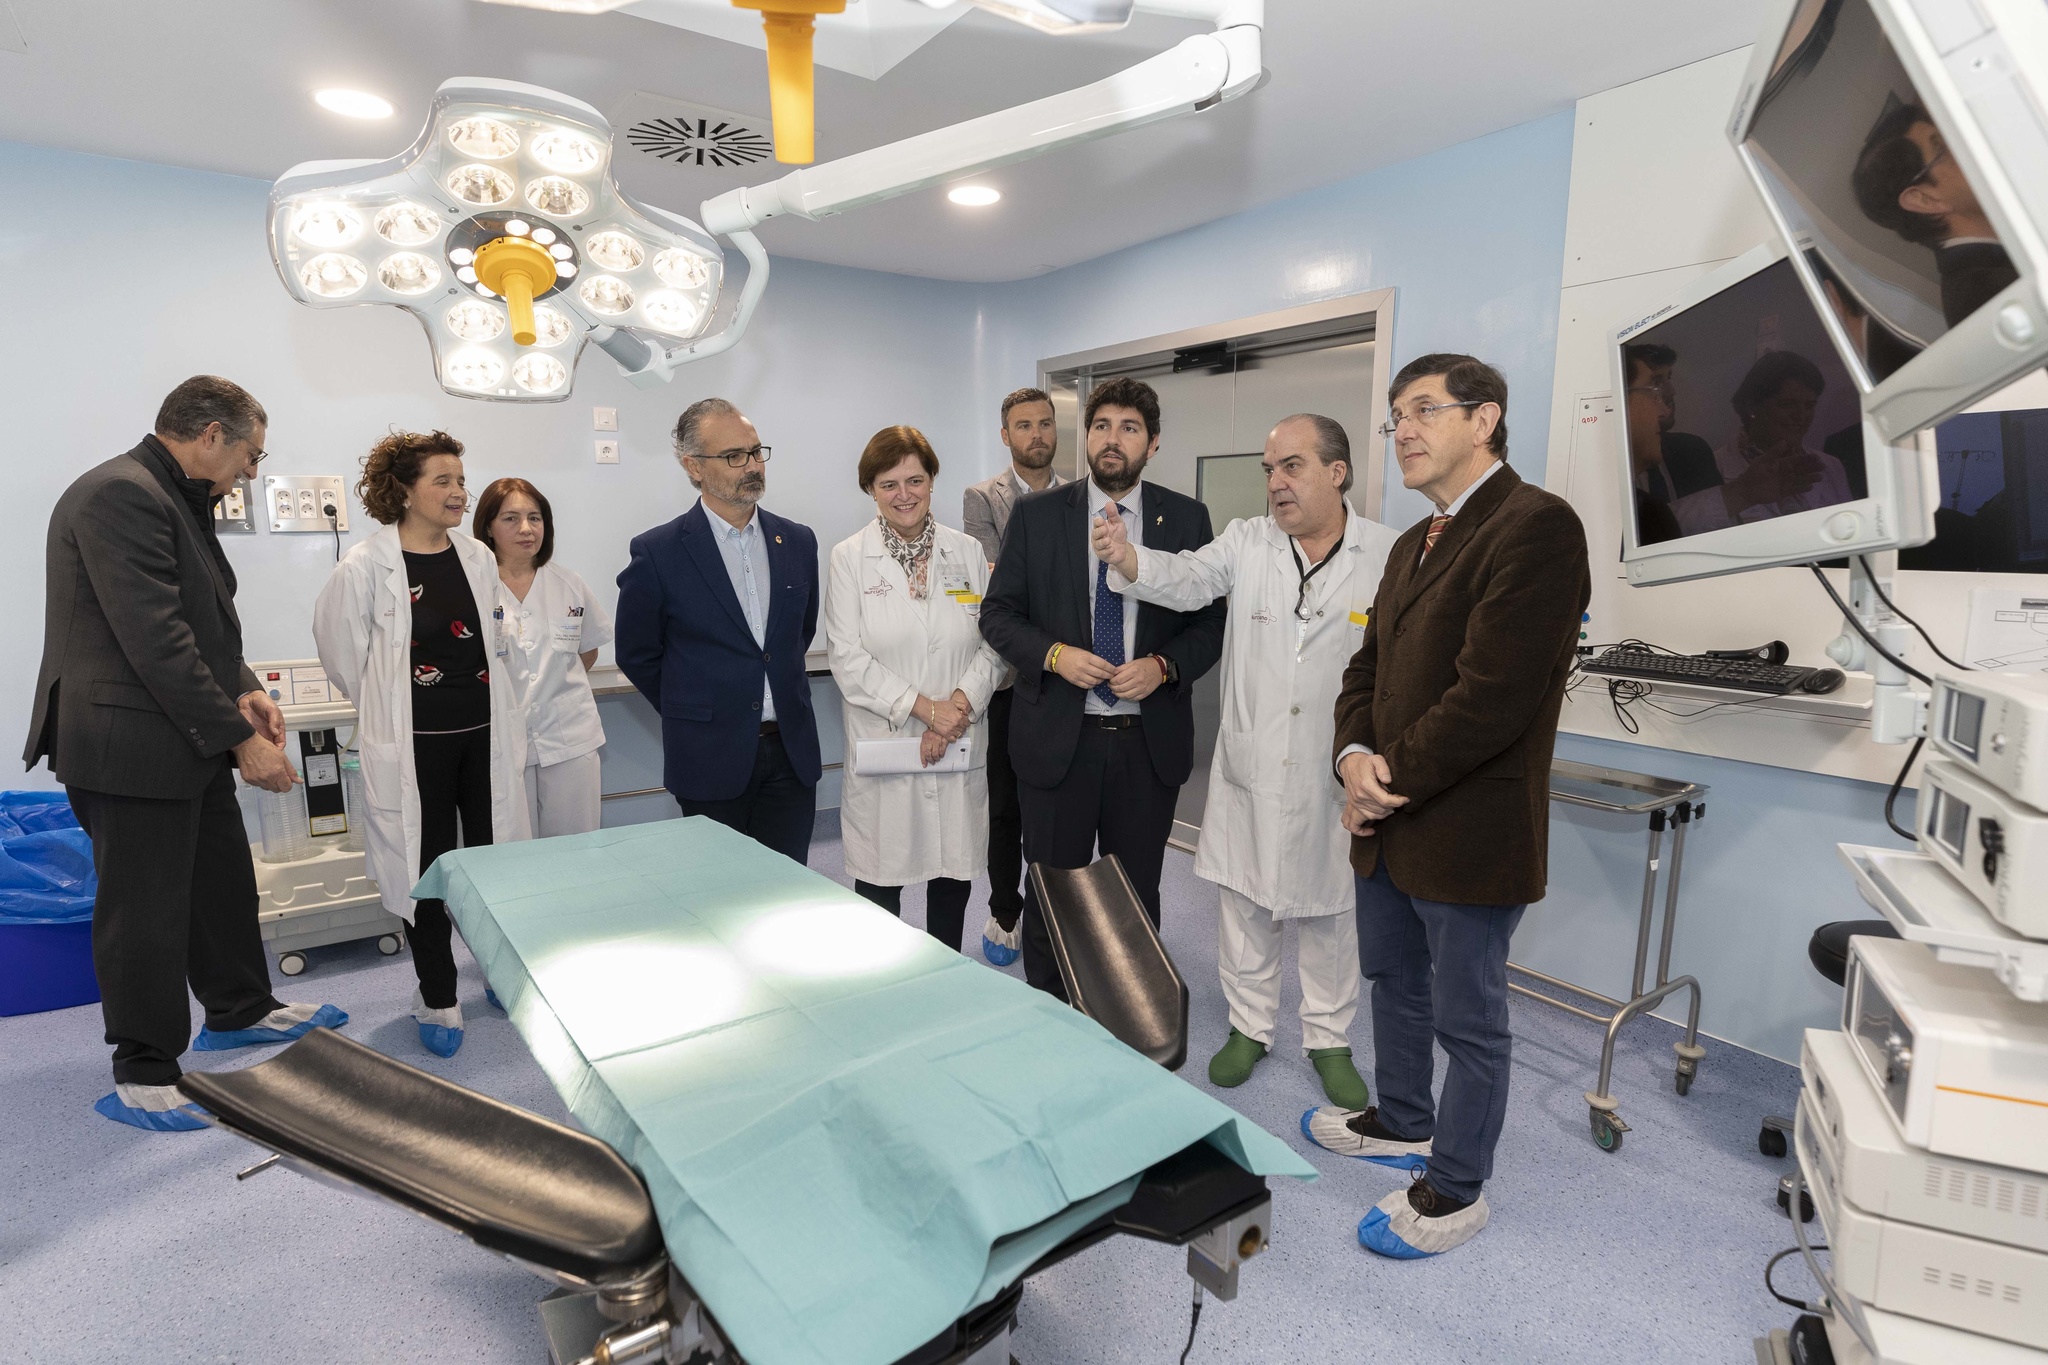 El presidente de la Comunidad, Fernando López Miras, inaugura las nuevas instalaciones del hospital Comarcal del Noroeste tras las obras de reforma y ampliación de su zona quirúrgica